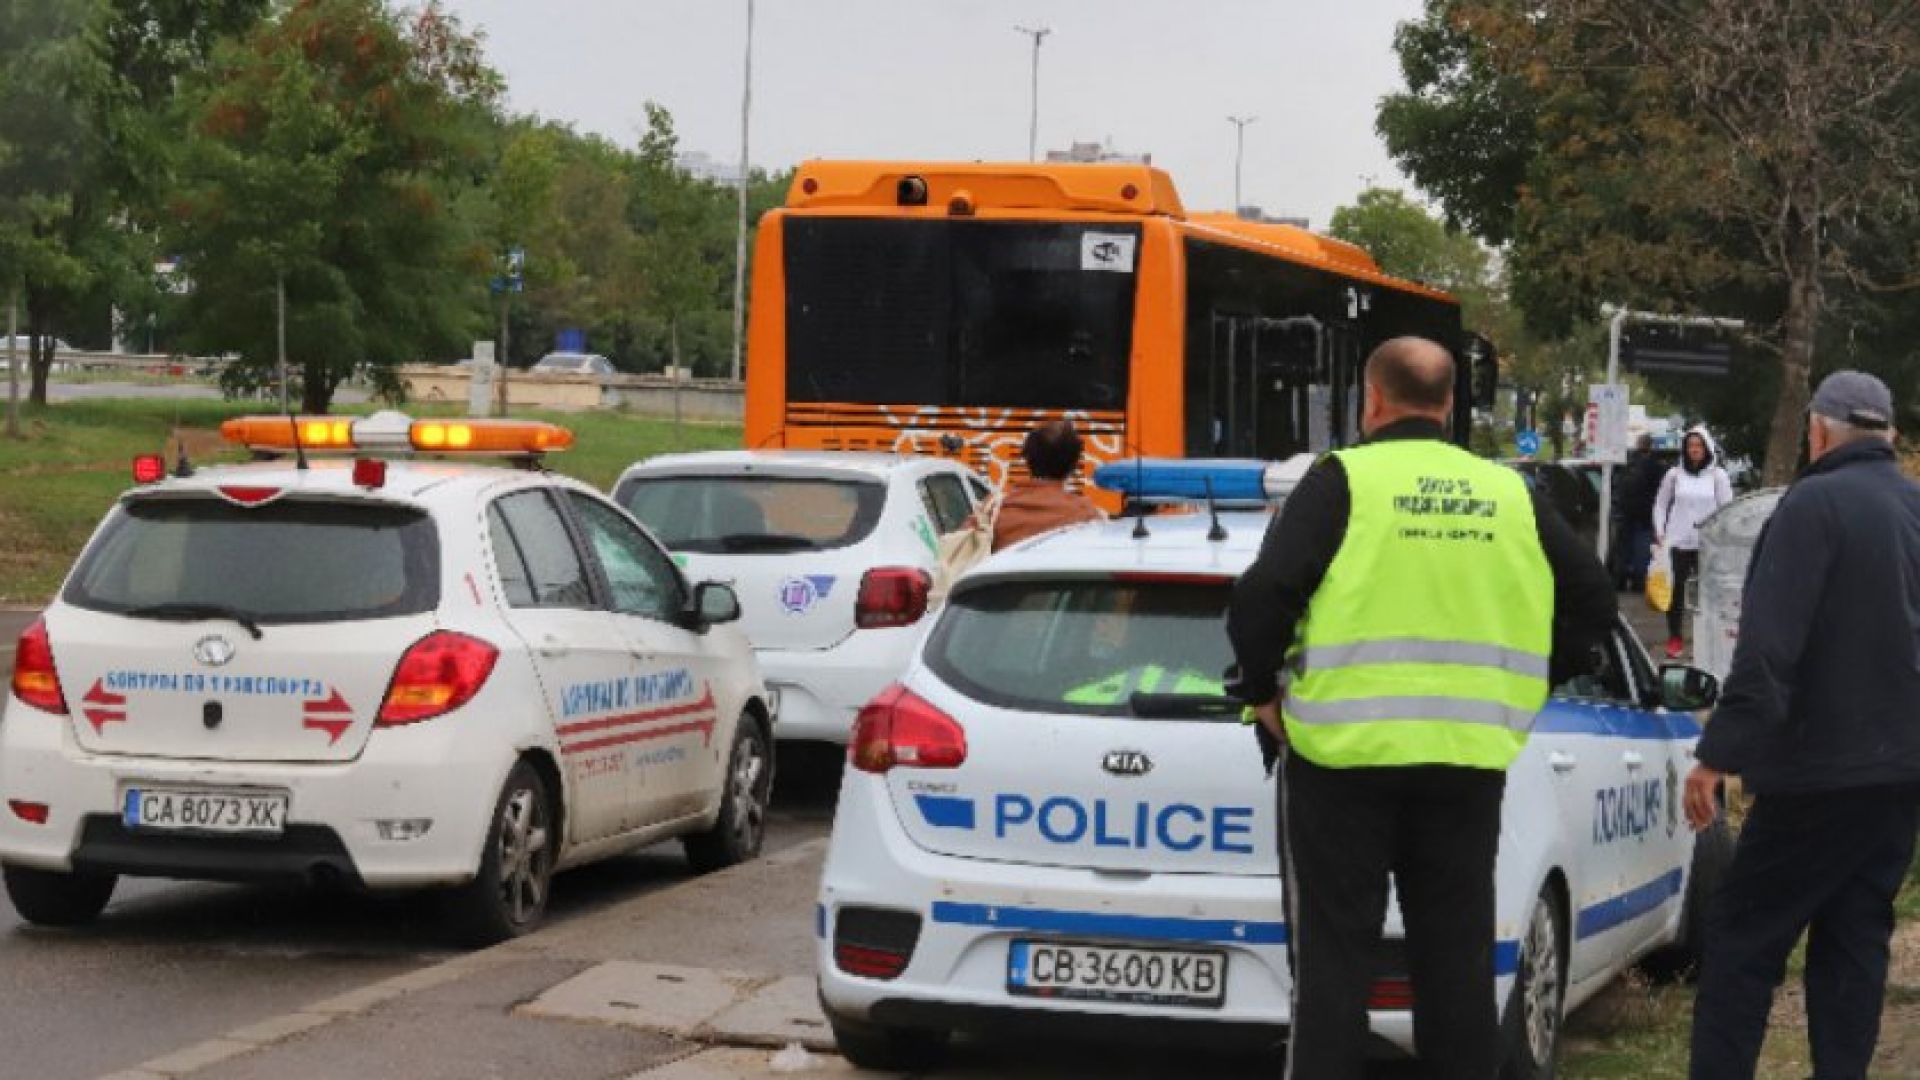 Градски автобус се запали и удари 3 коли на "Цариградско шосе" в София (снимки)